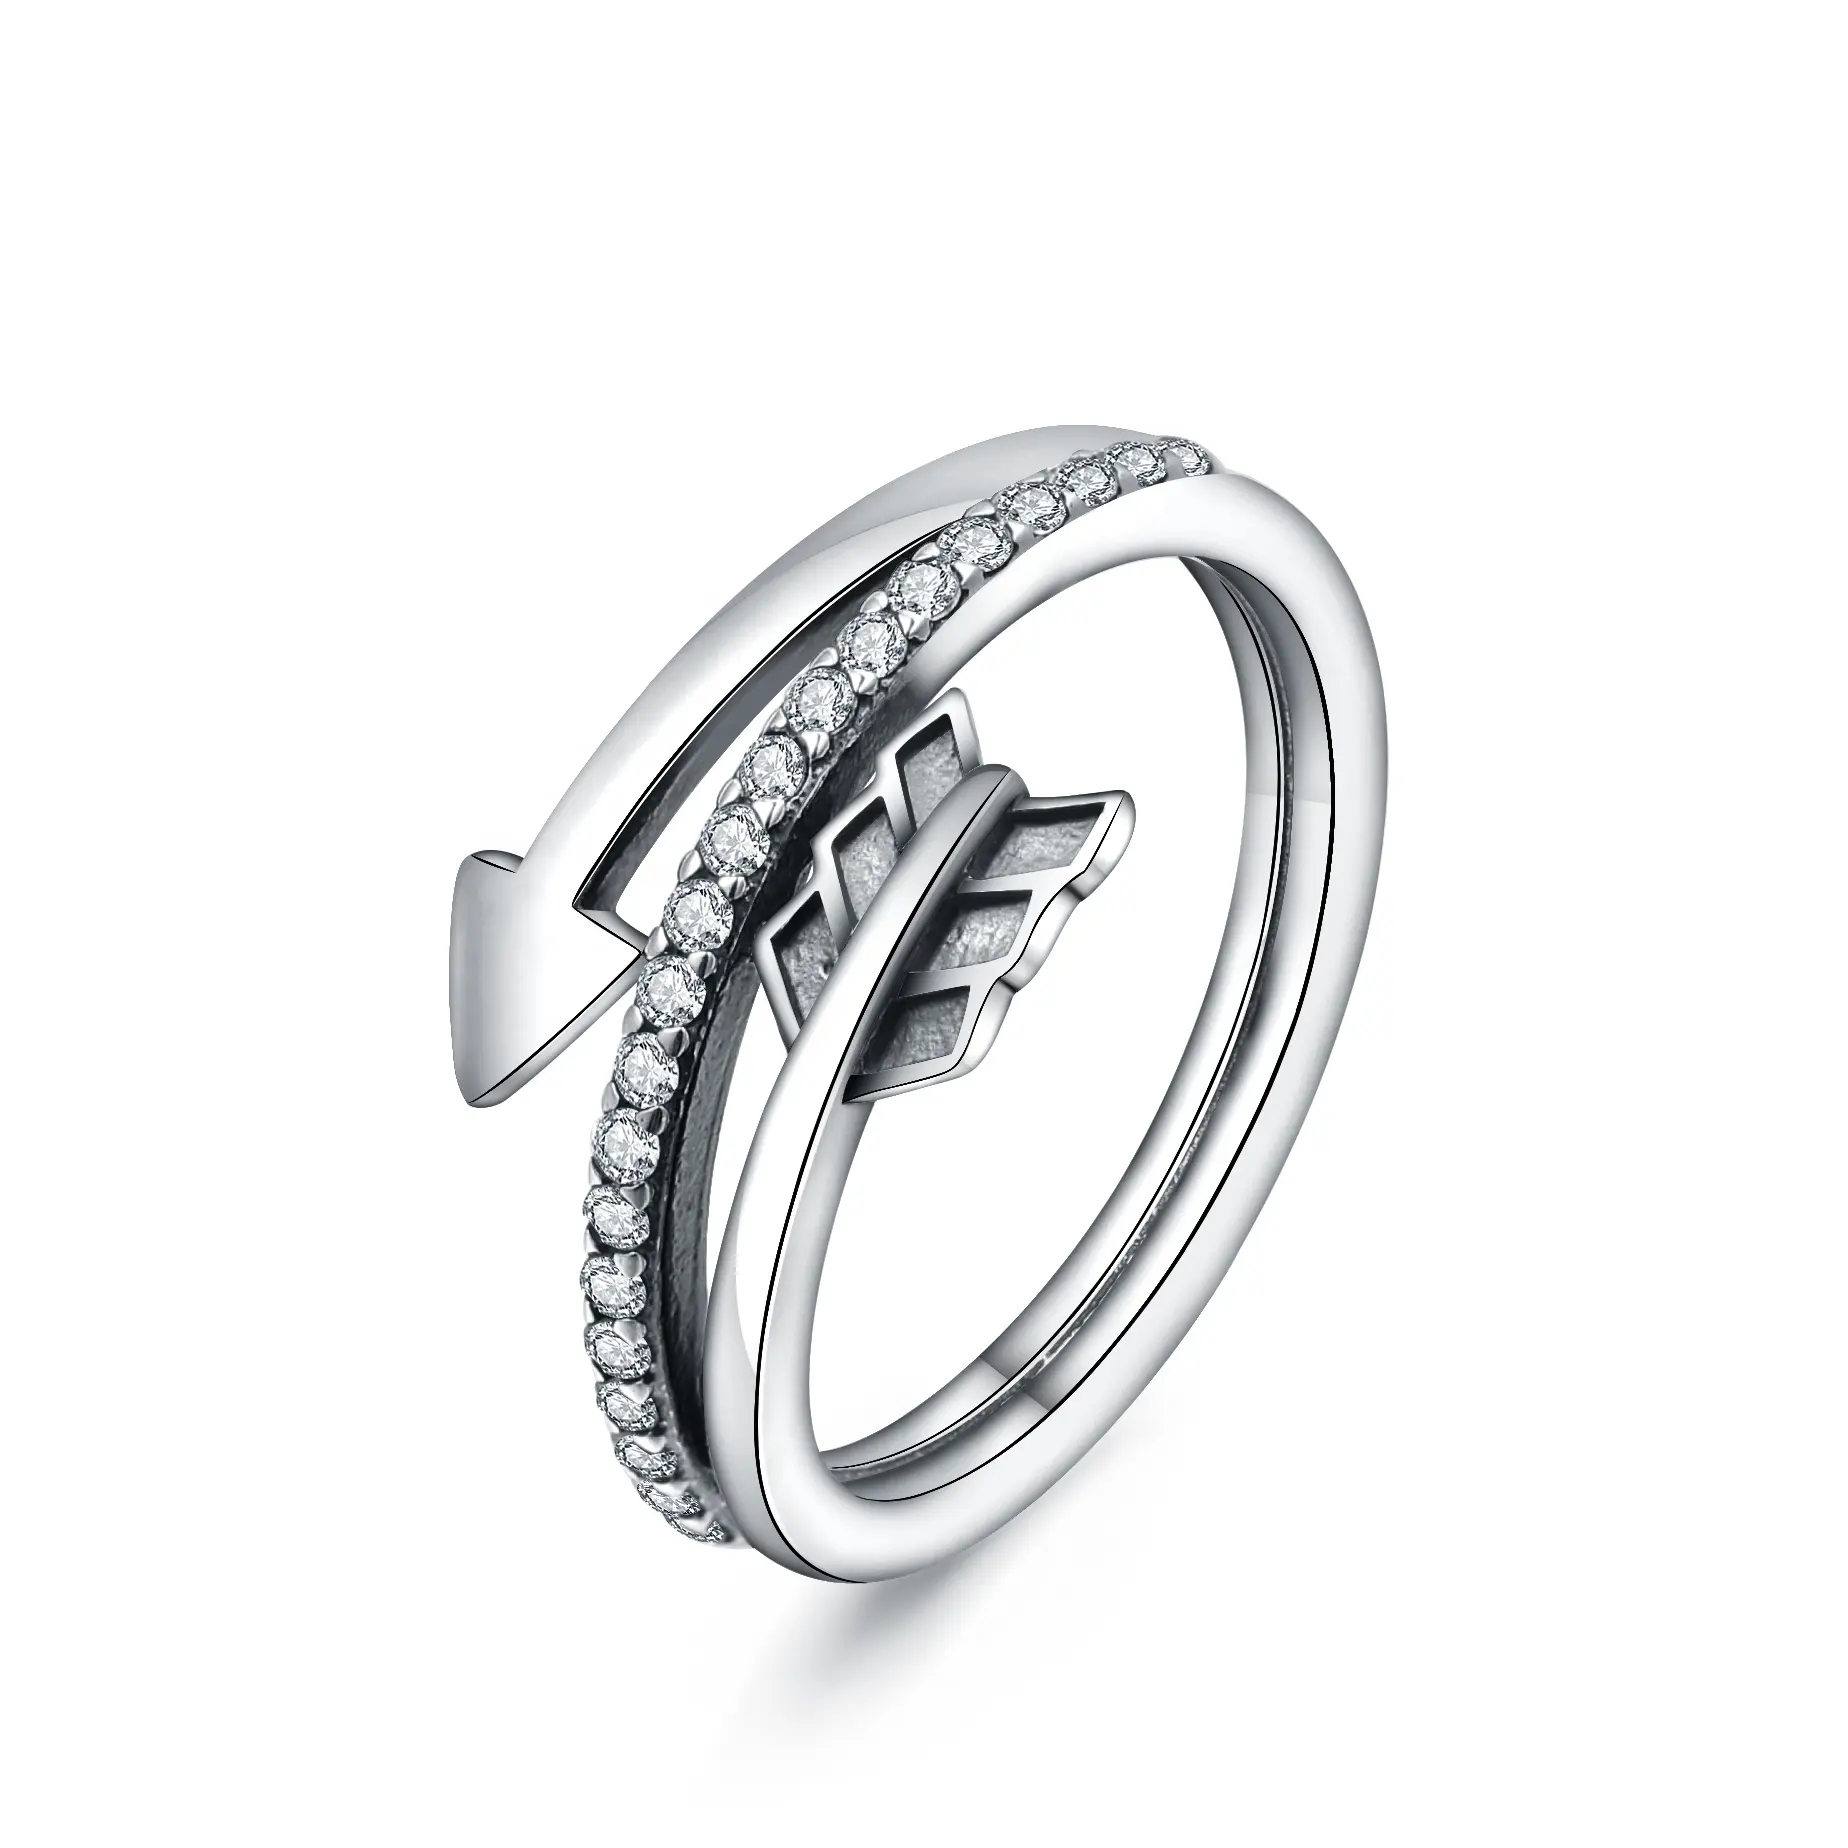 Merryshine-anillo ajustable para mujer, Plata de Ley 925, diseño vintage, con flecha abierta lateral